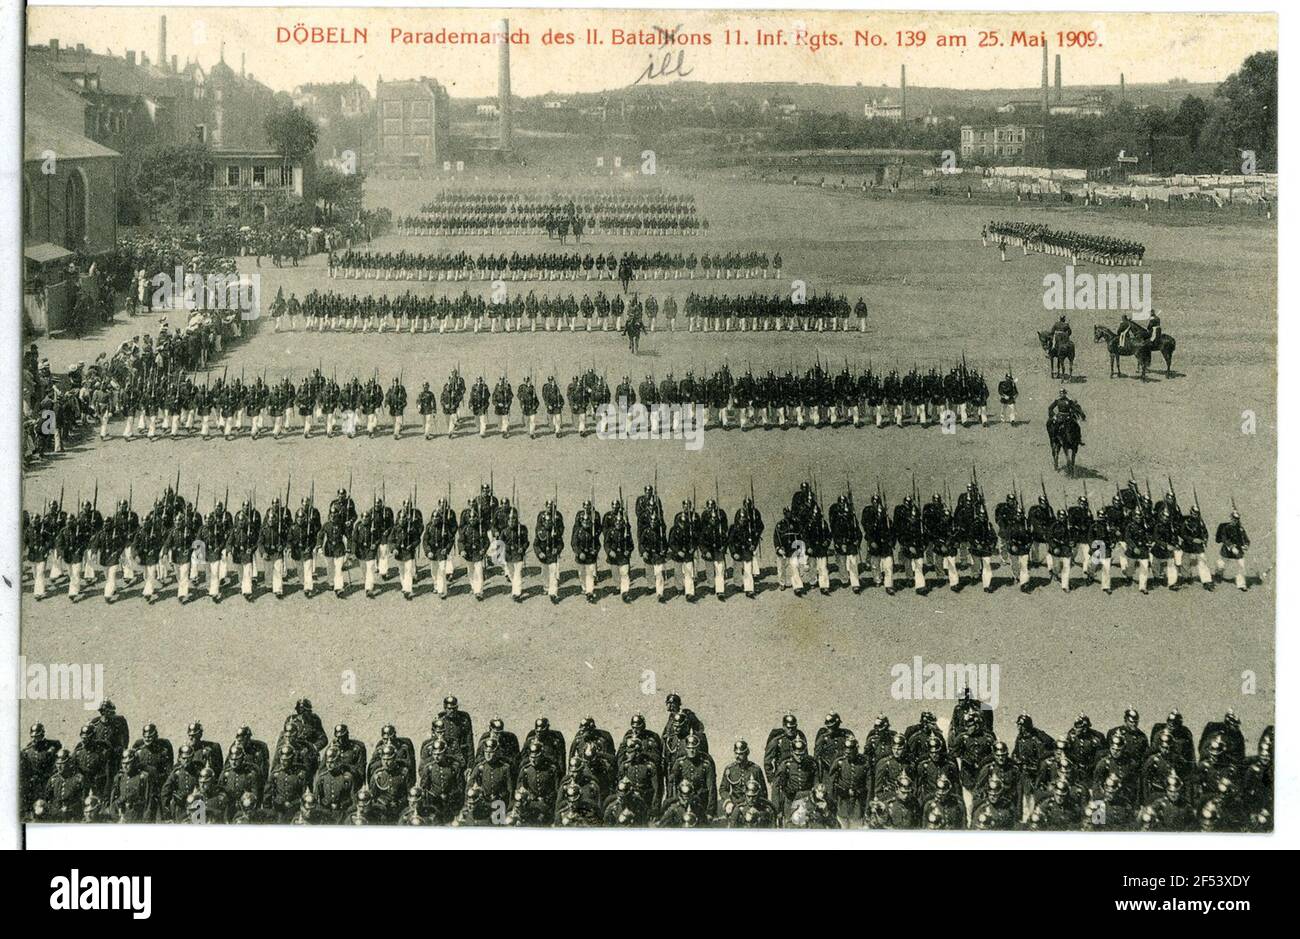 Paradmal, 11. Infantry-regiment No. 139 Dubbing. Parademarsch, 11.inf.-Reg. 139 Stock Photo